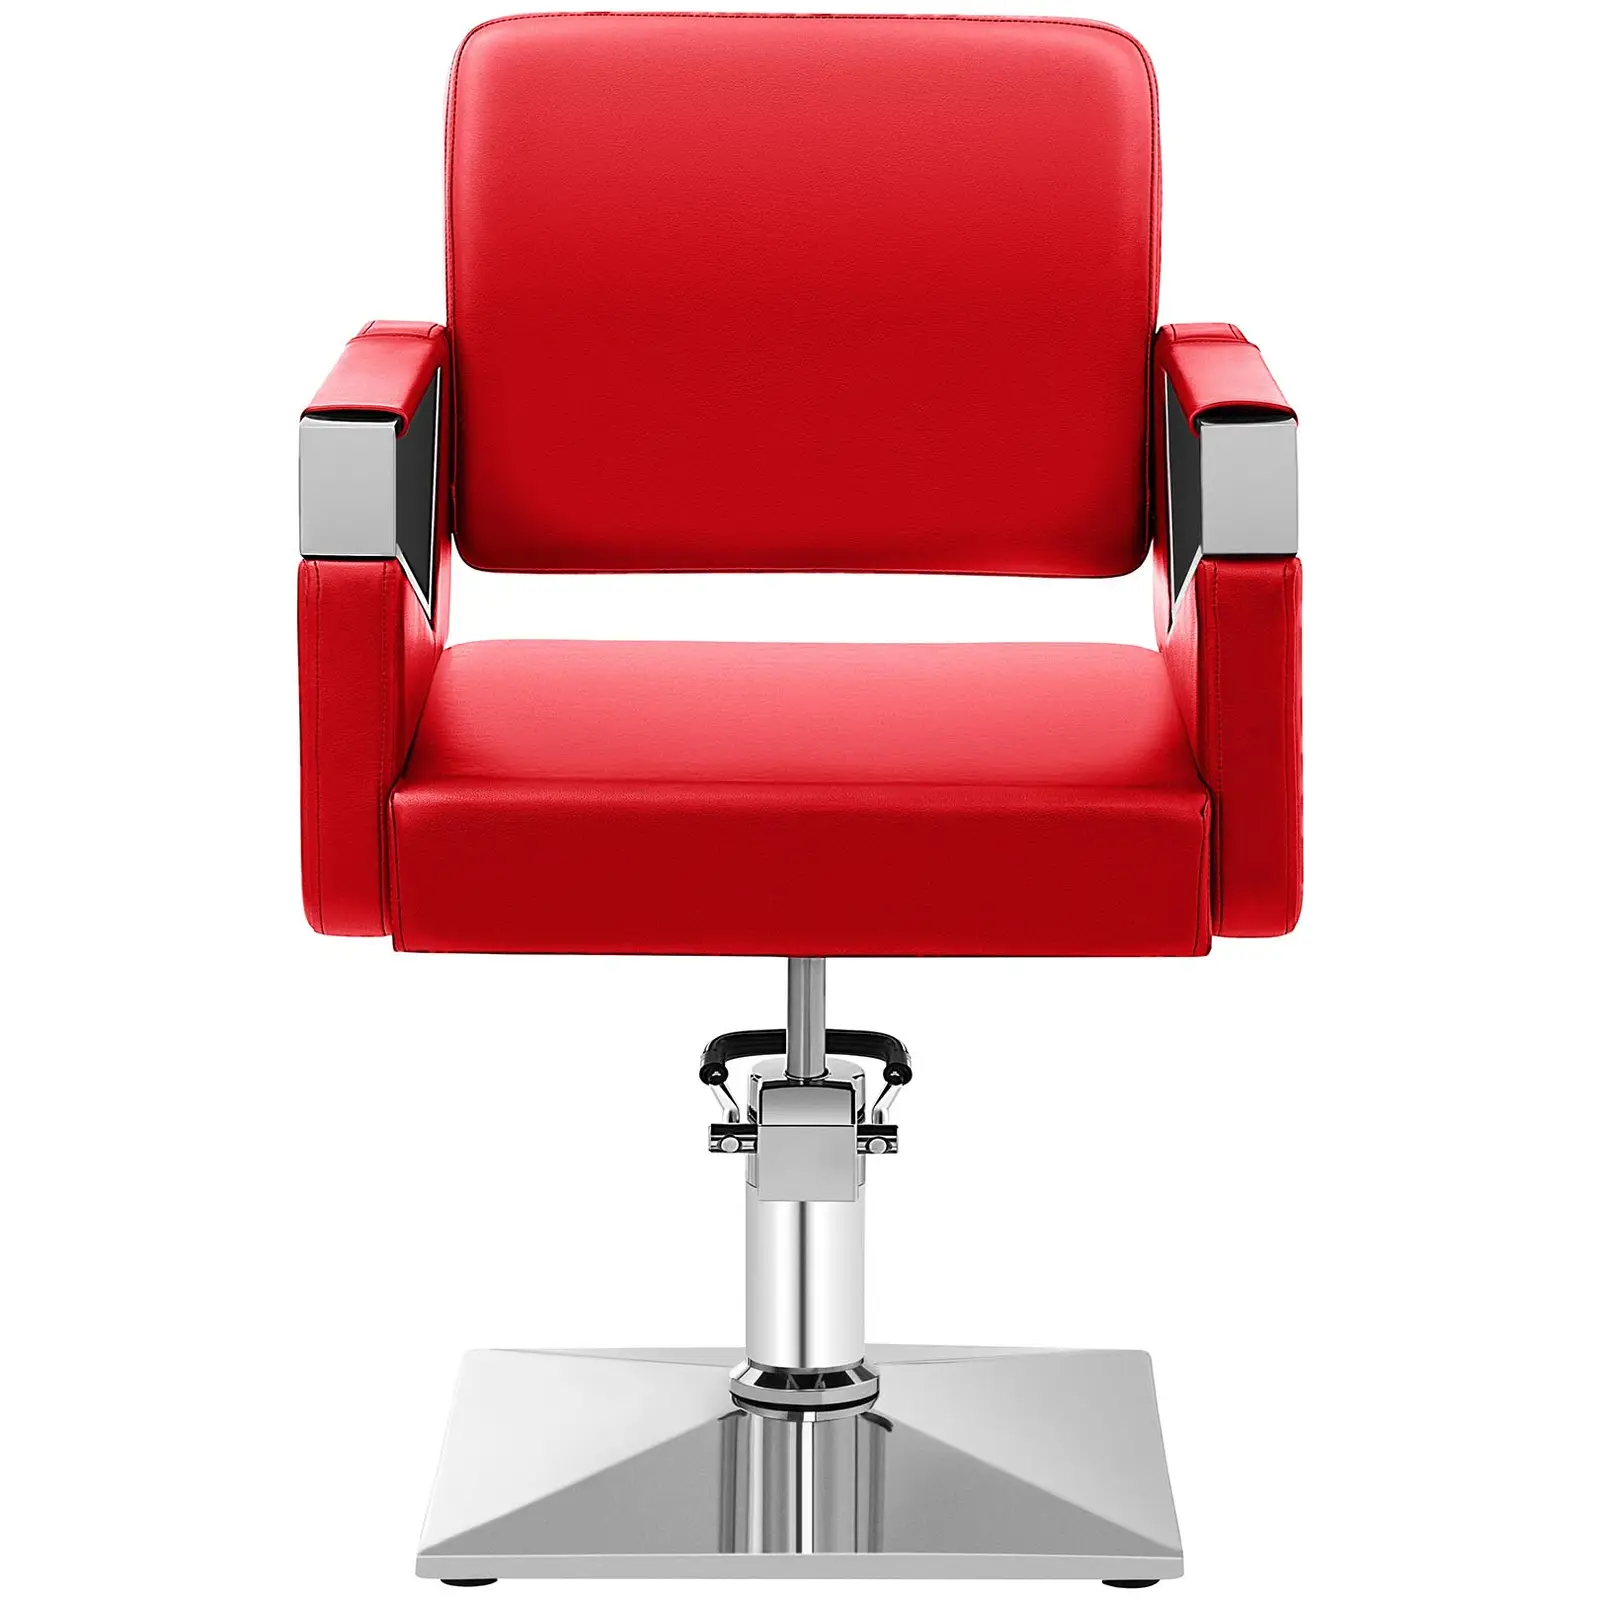 Fodrász szék - 445–550 mm - 200 kg - Piros